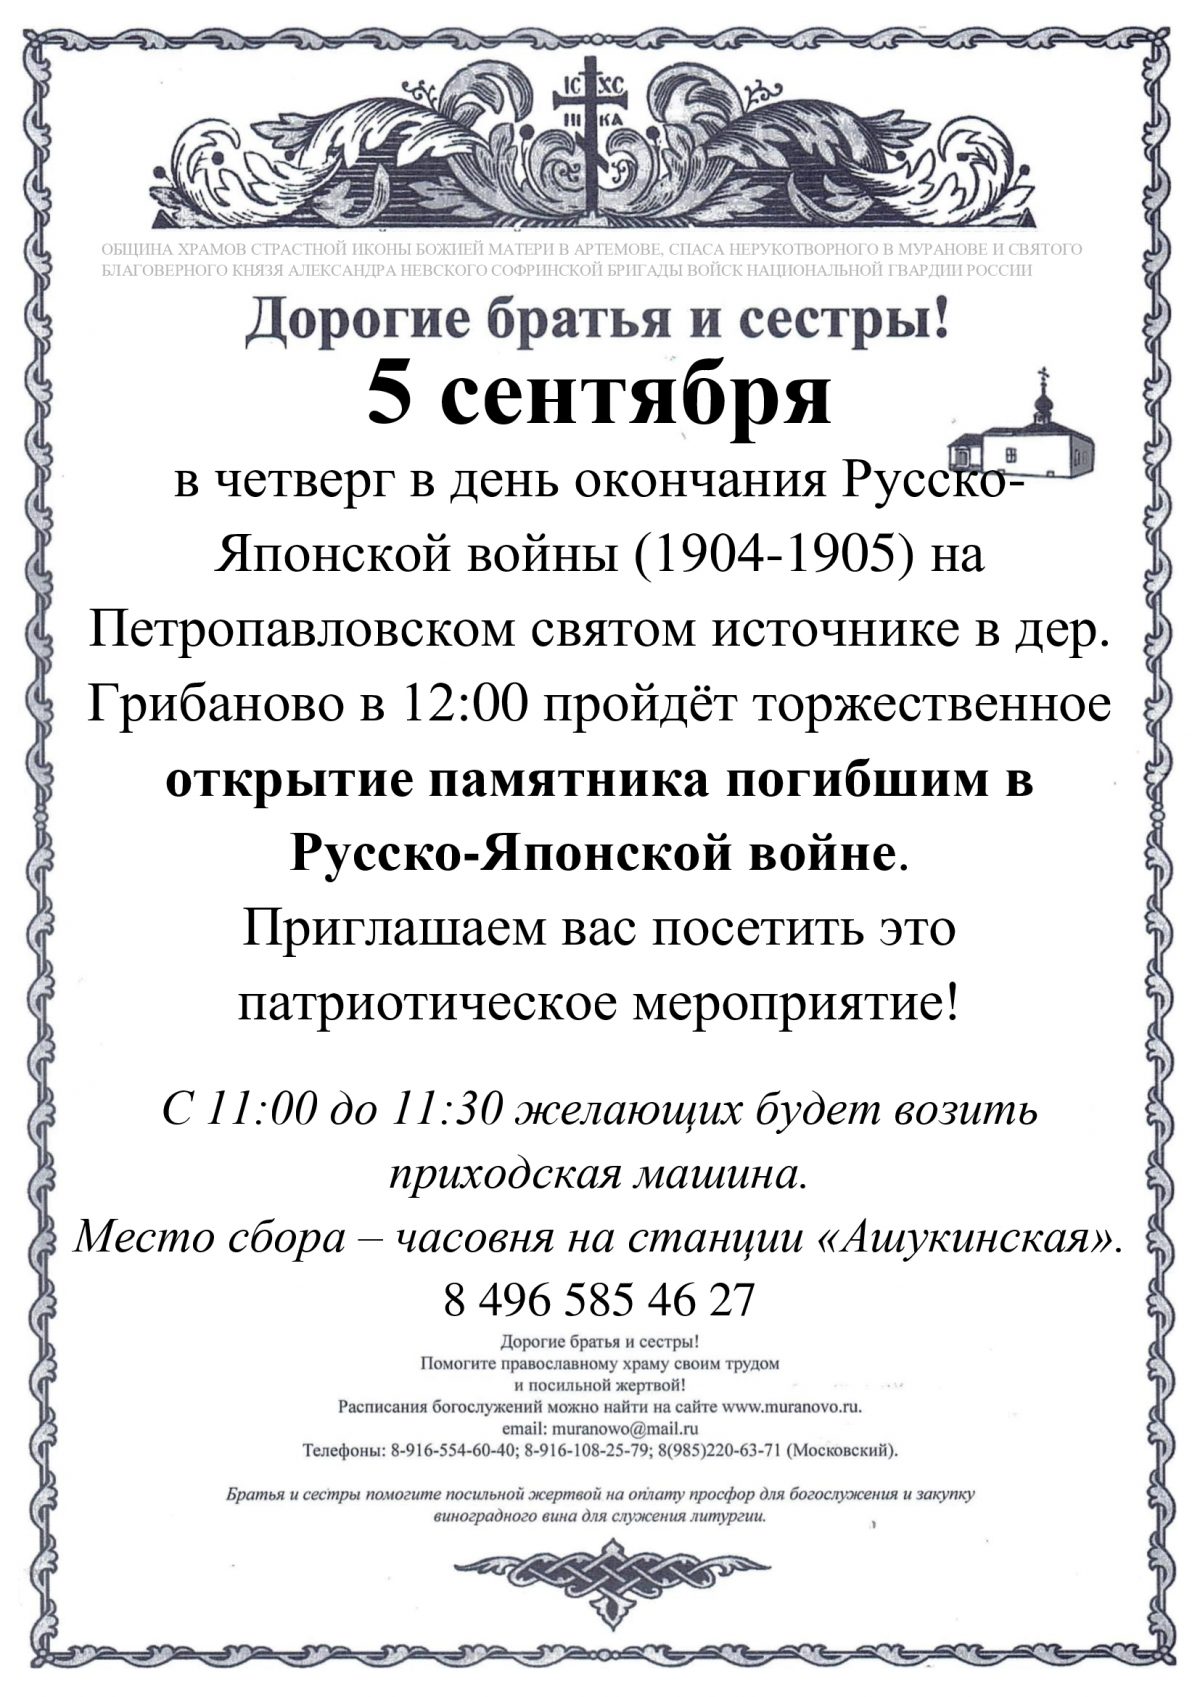 Приглашение на открытие 5 сентября памятника Русско-Японской войне в Пушкинском районе МО